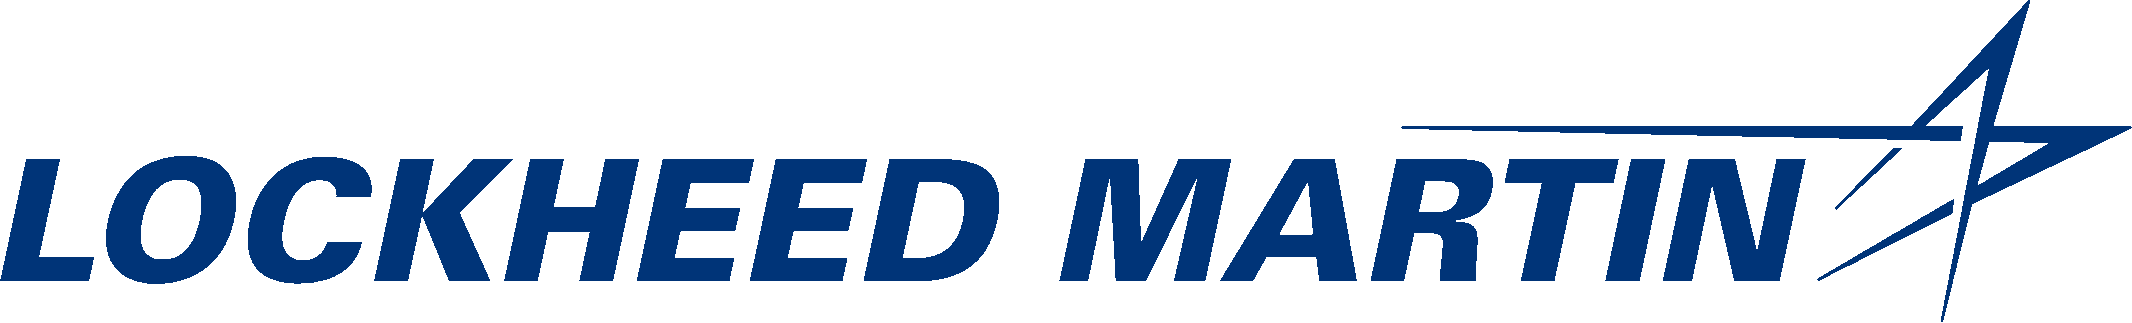 Logo: Lockheed Martin logo